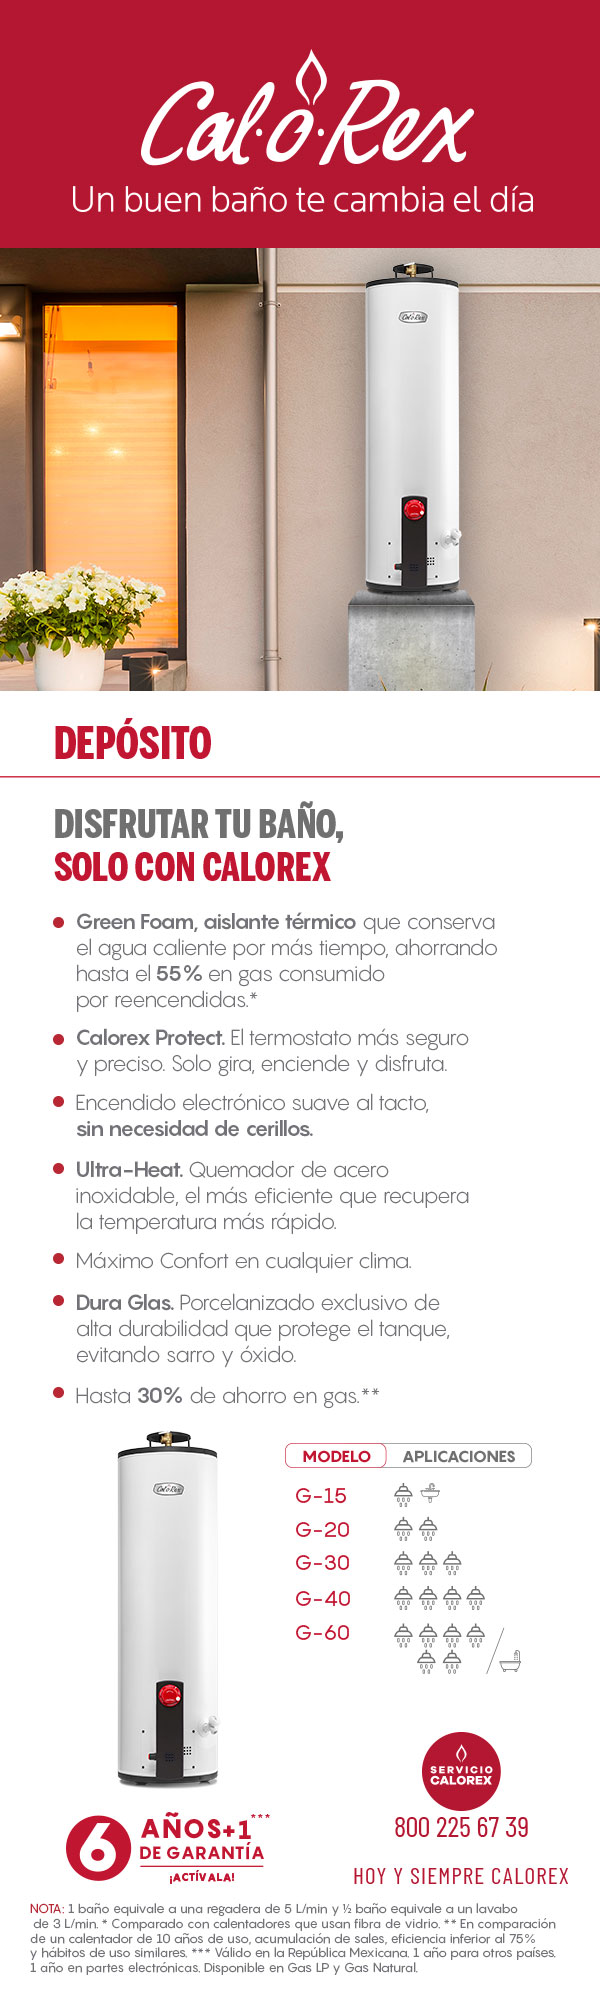 Calentadores de Agua de Depósito Calorex Home Depot México